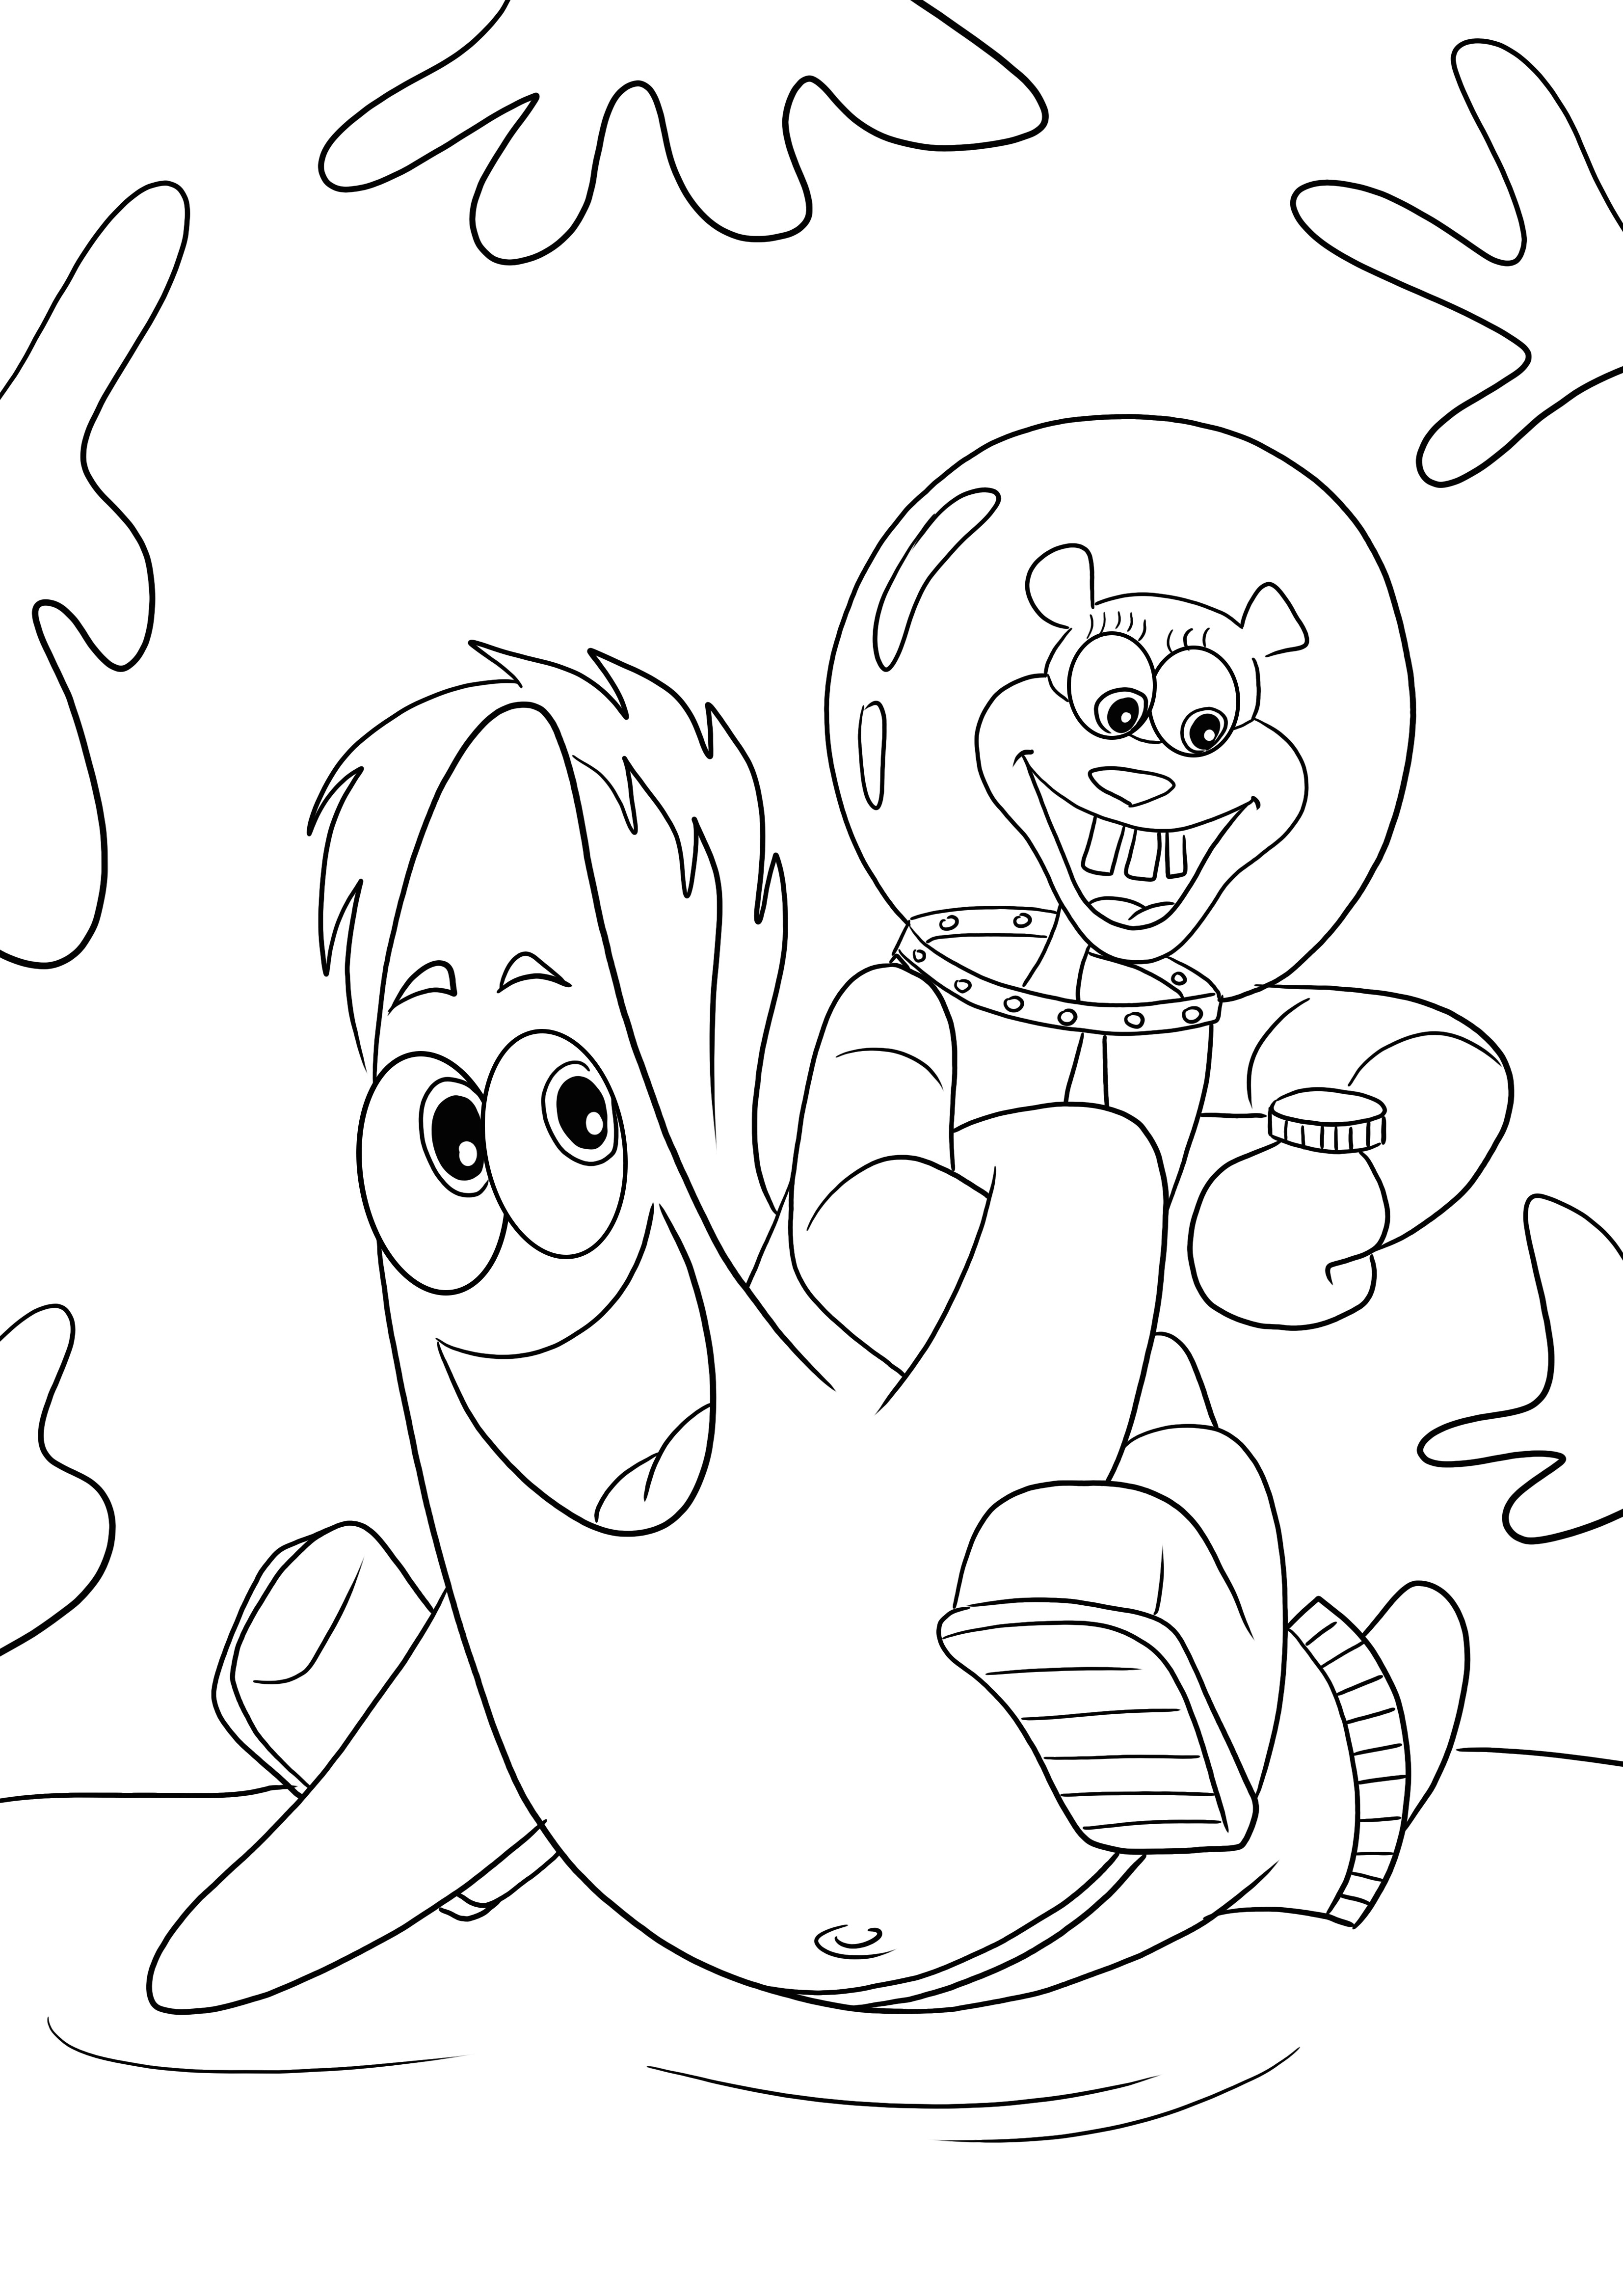 Sandy Chicks e Patrick nadando debaixo d'água grátis para imprimir e colorir para crianças